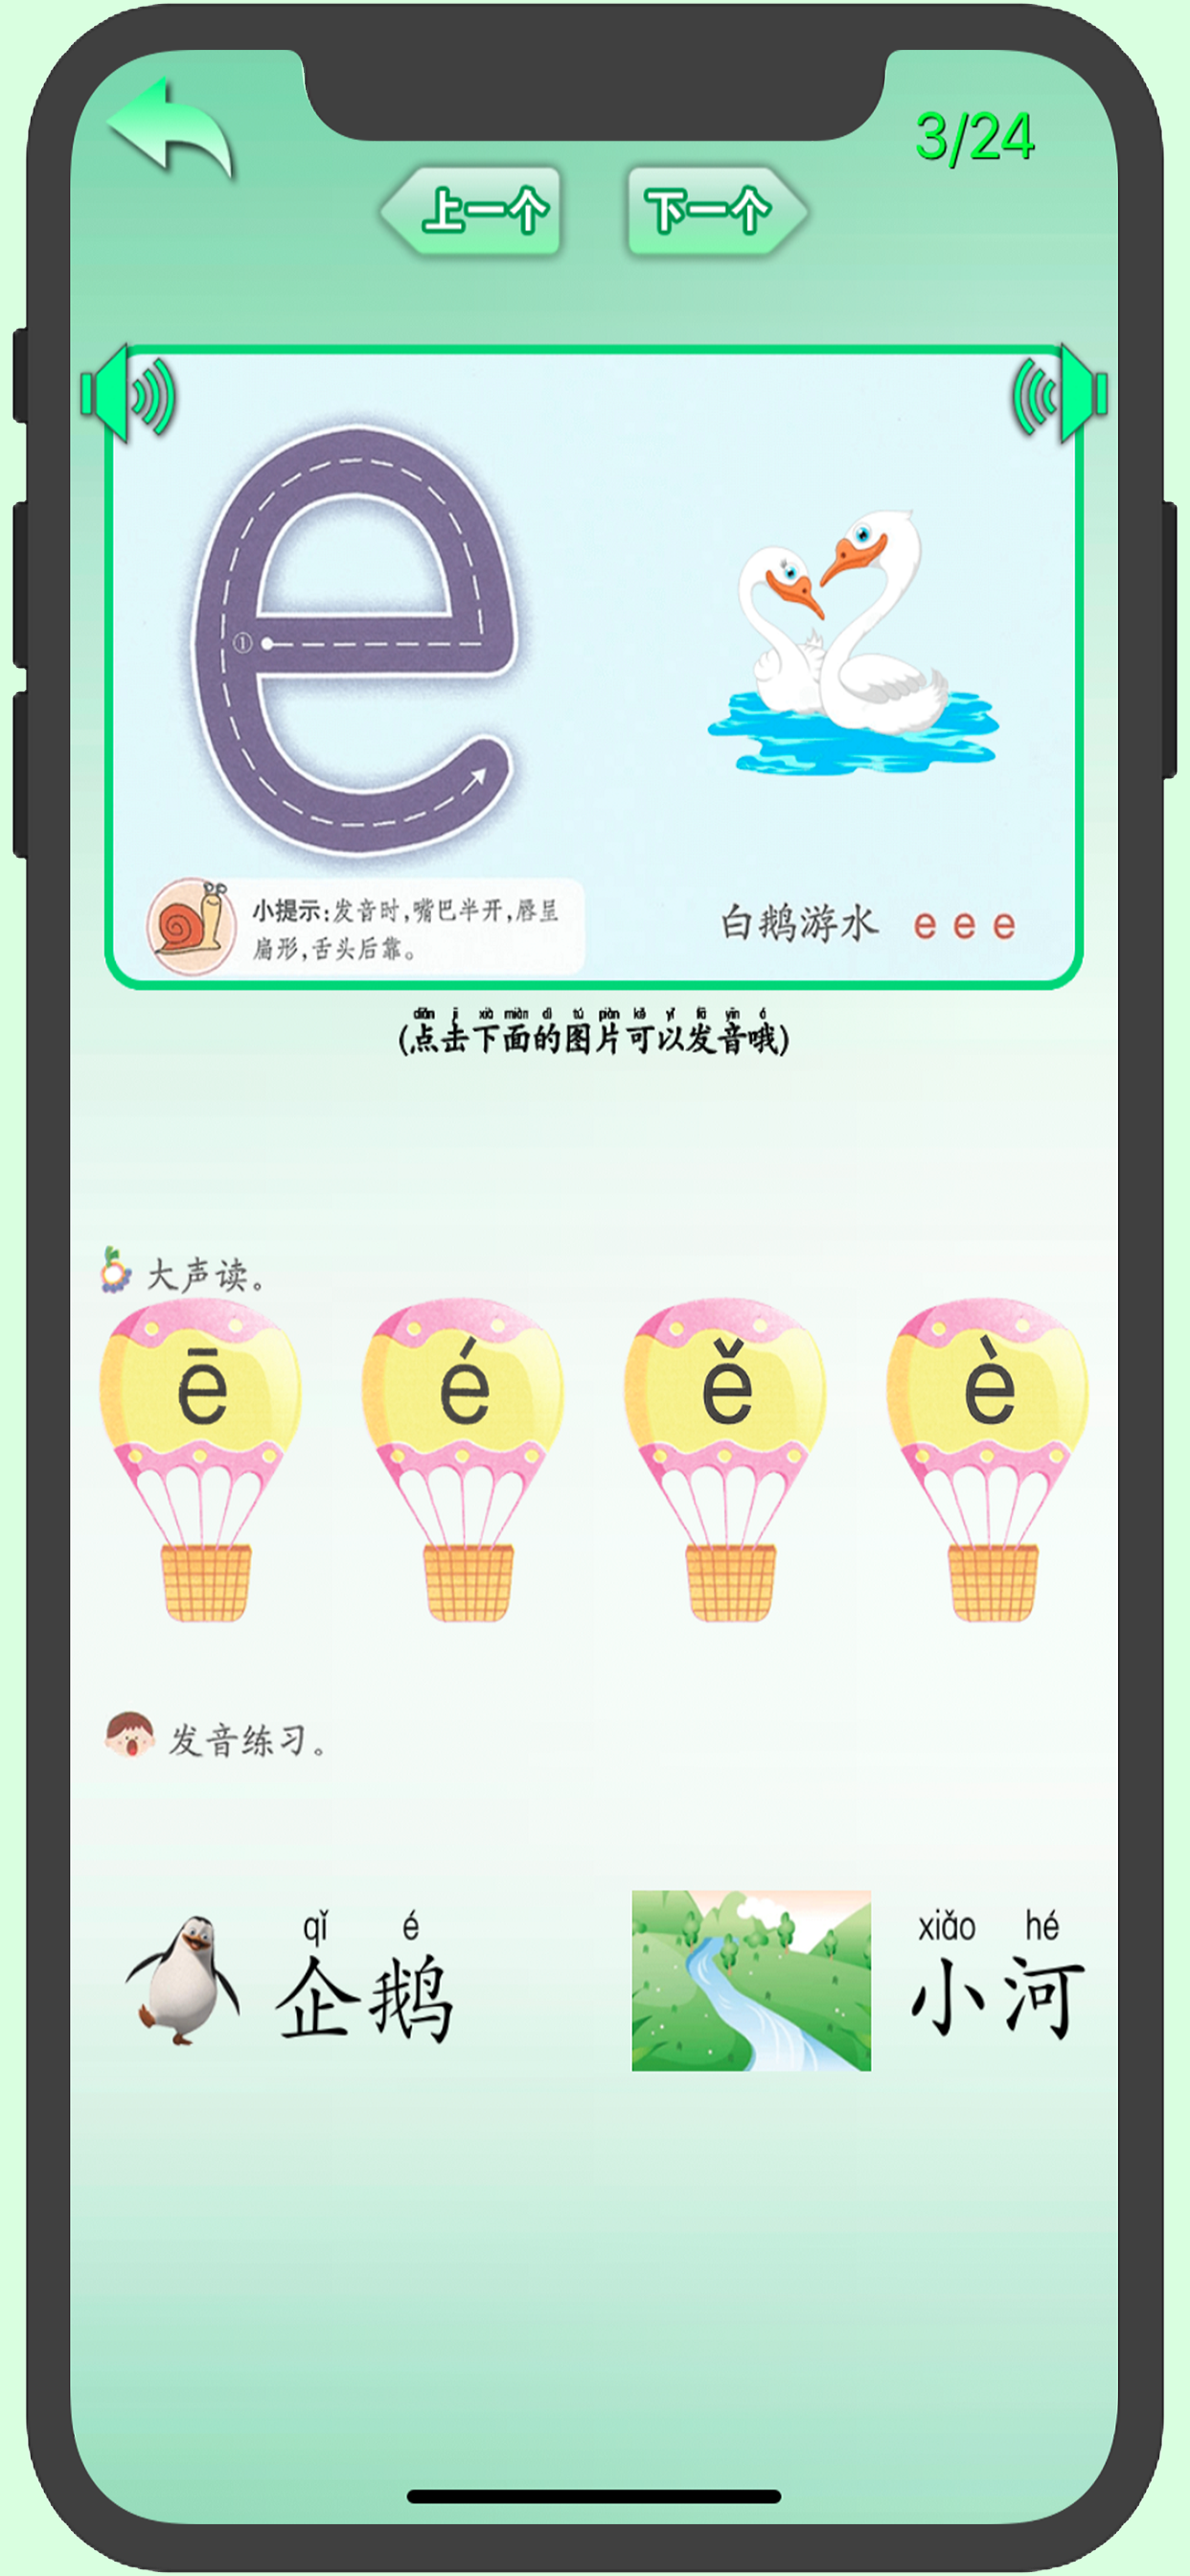 Screenshot 1 of Pinyin Cina Dasar 1.4.4